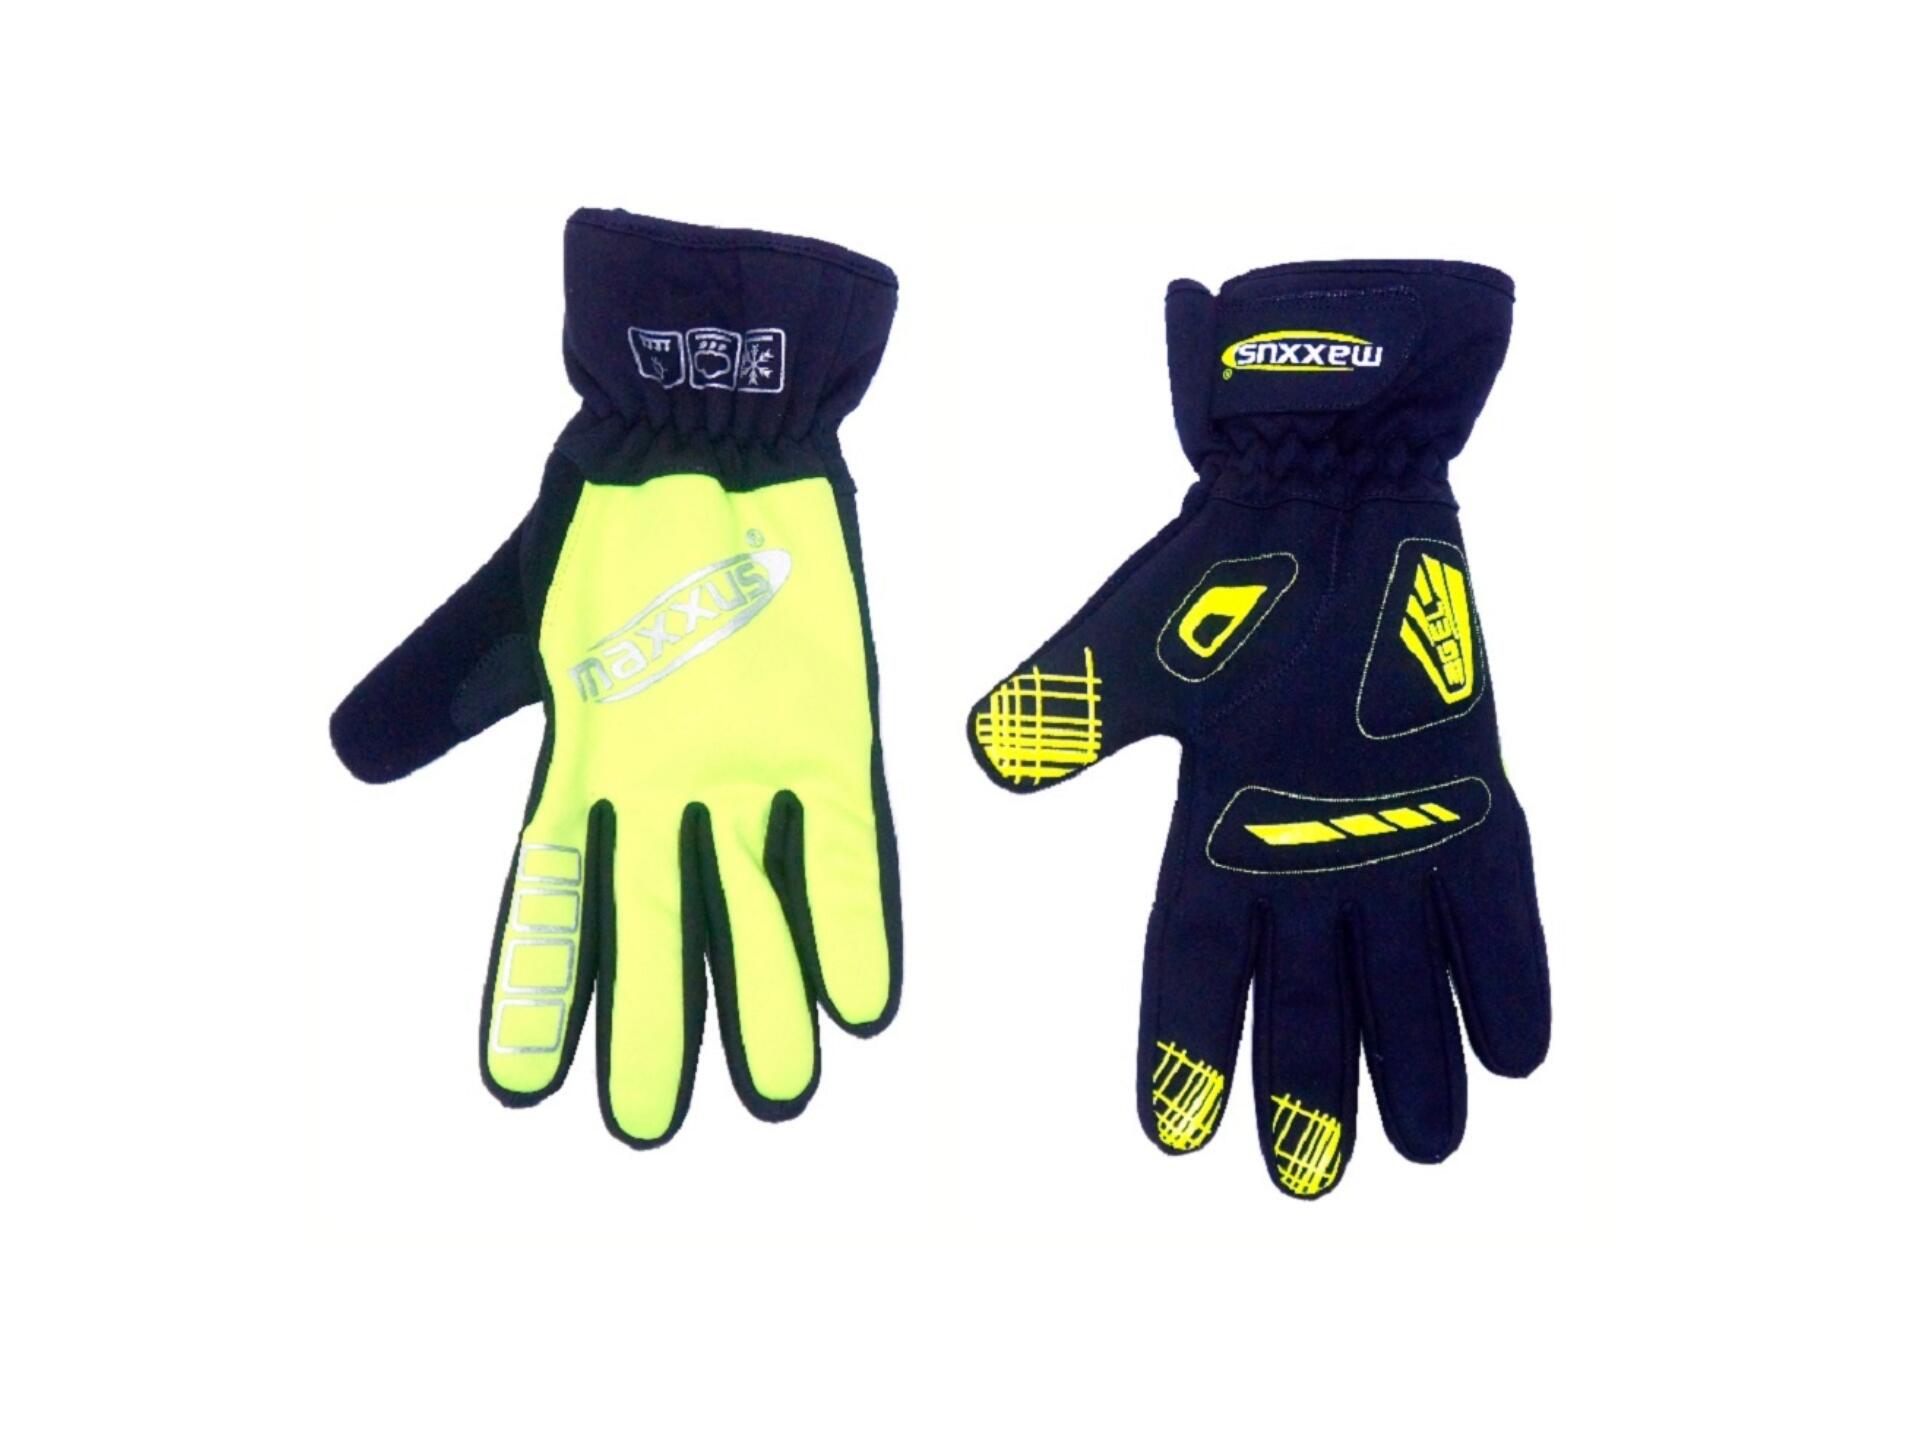 Maxxus Reflex gants de vélo XL jaune/noir